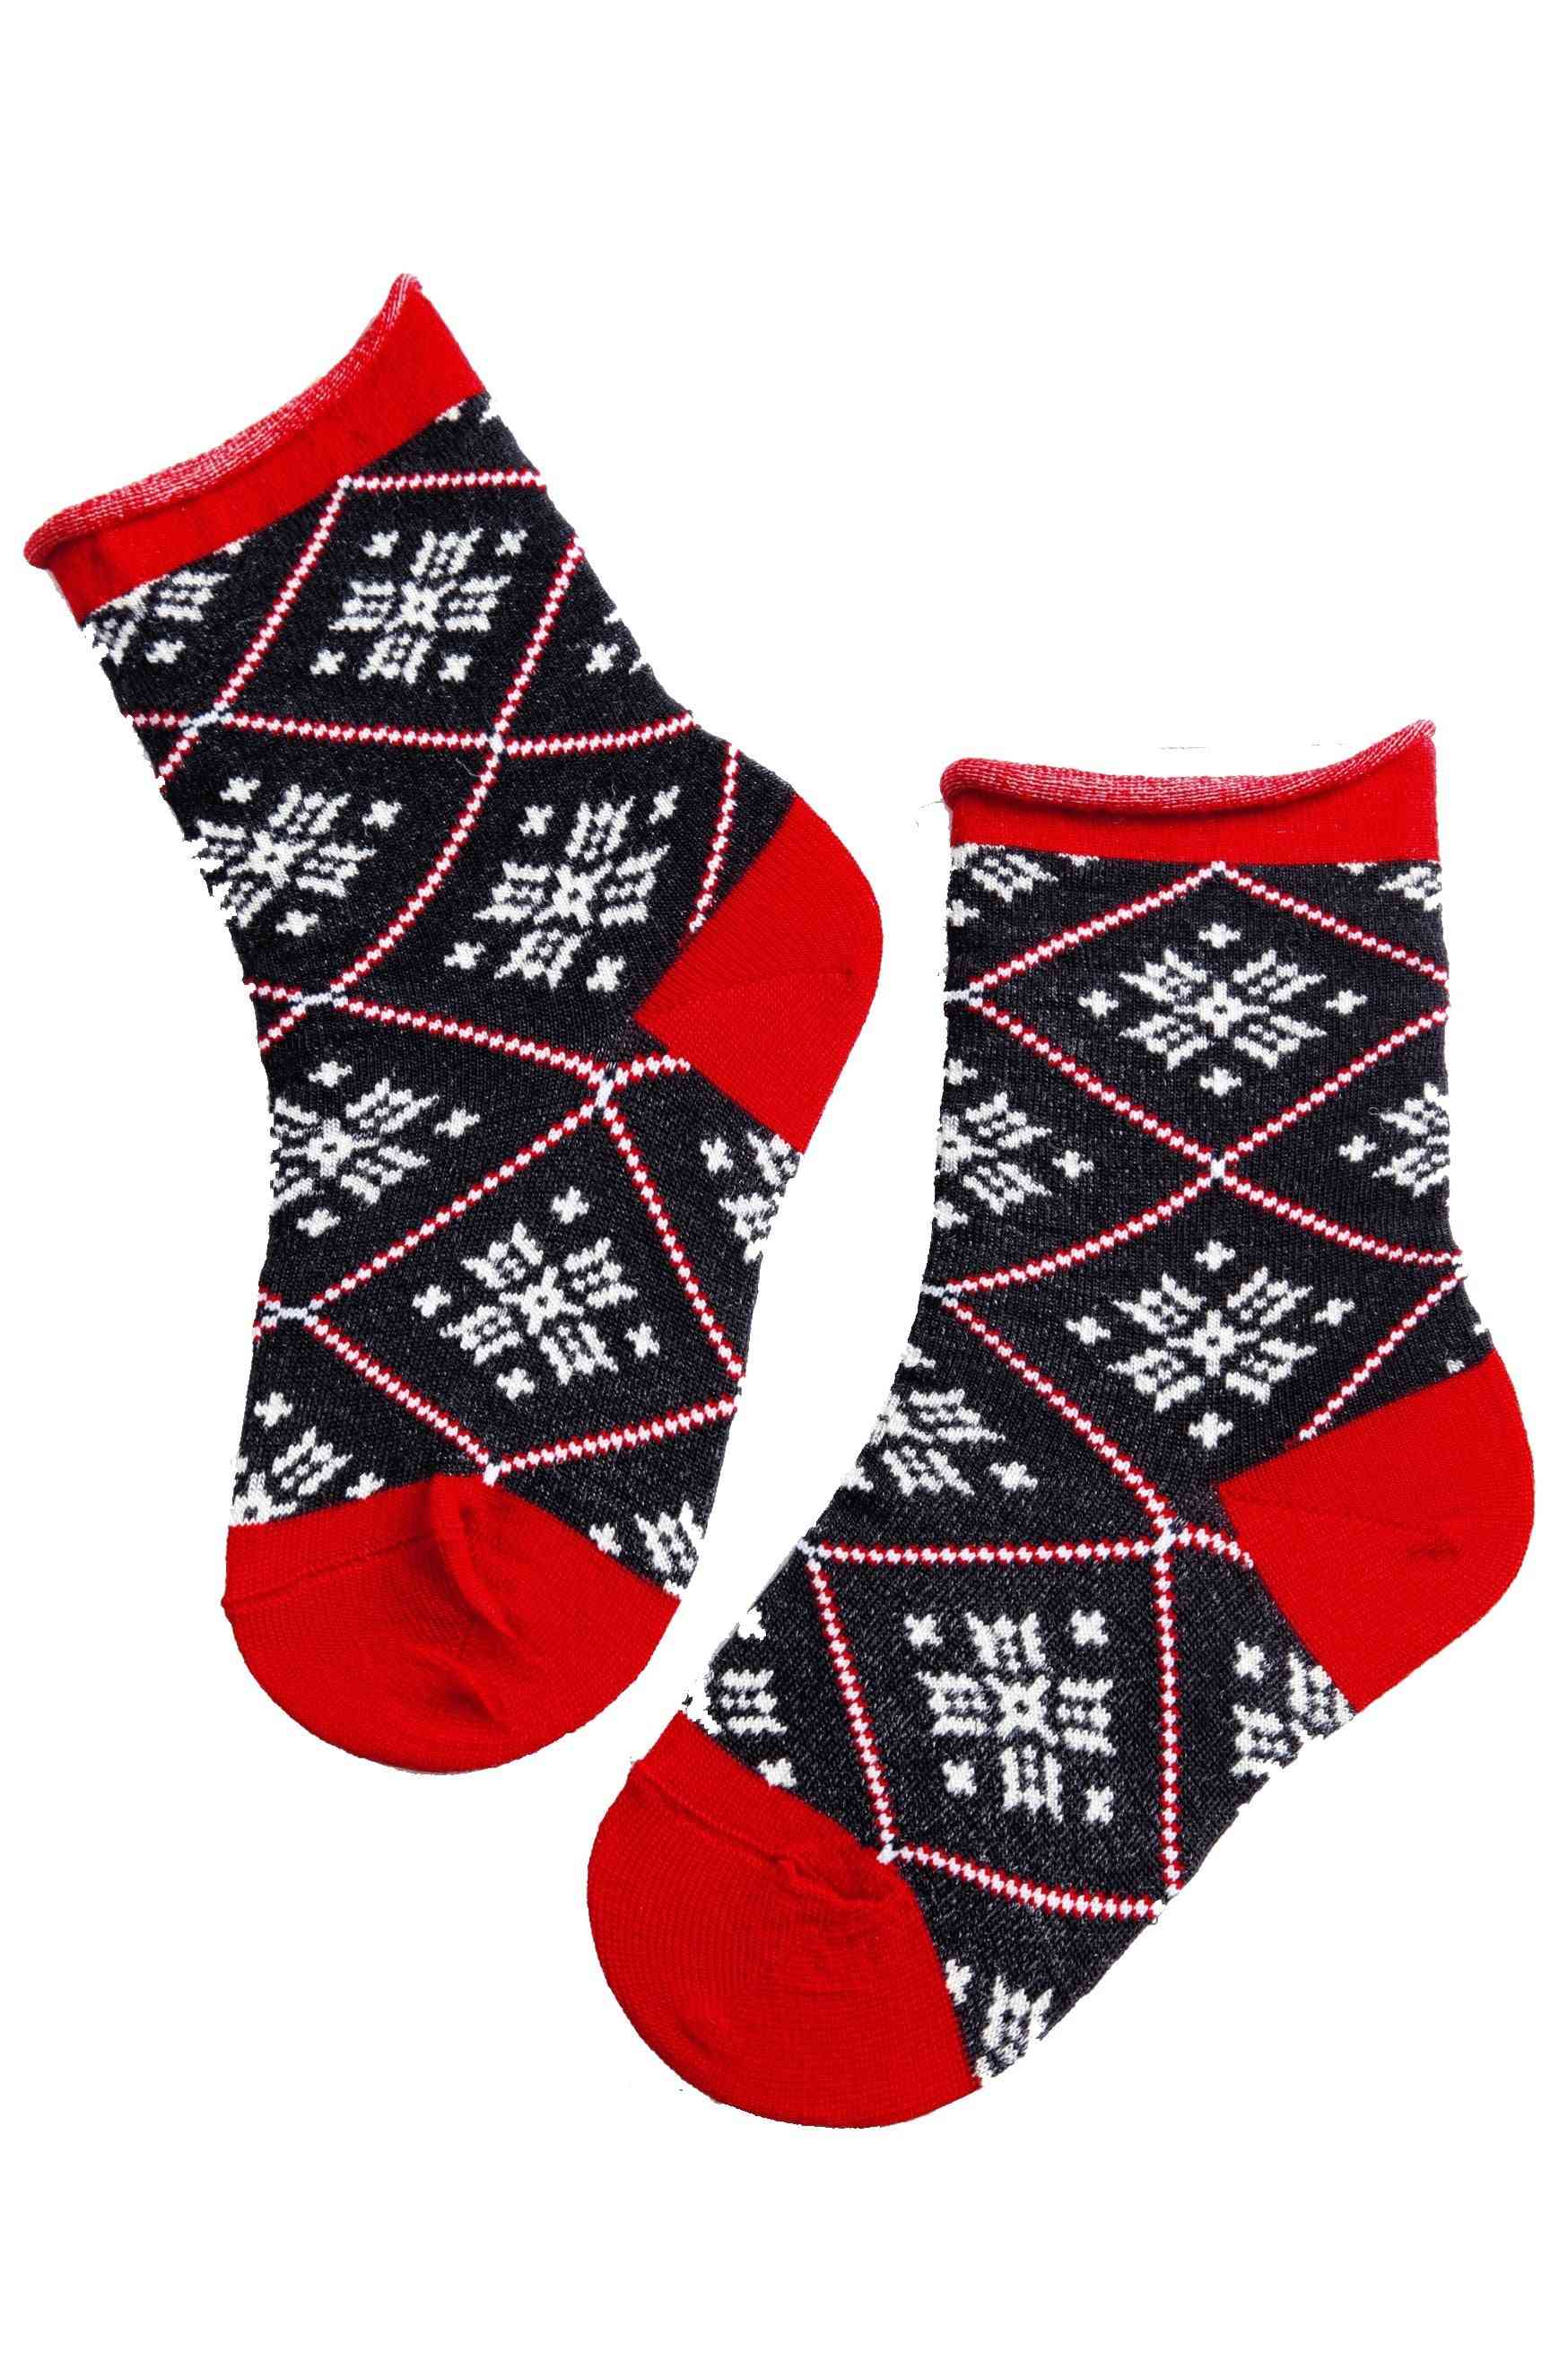 Warm Merino Socks For